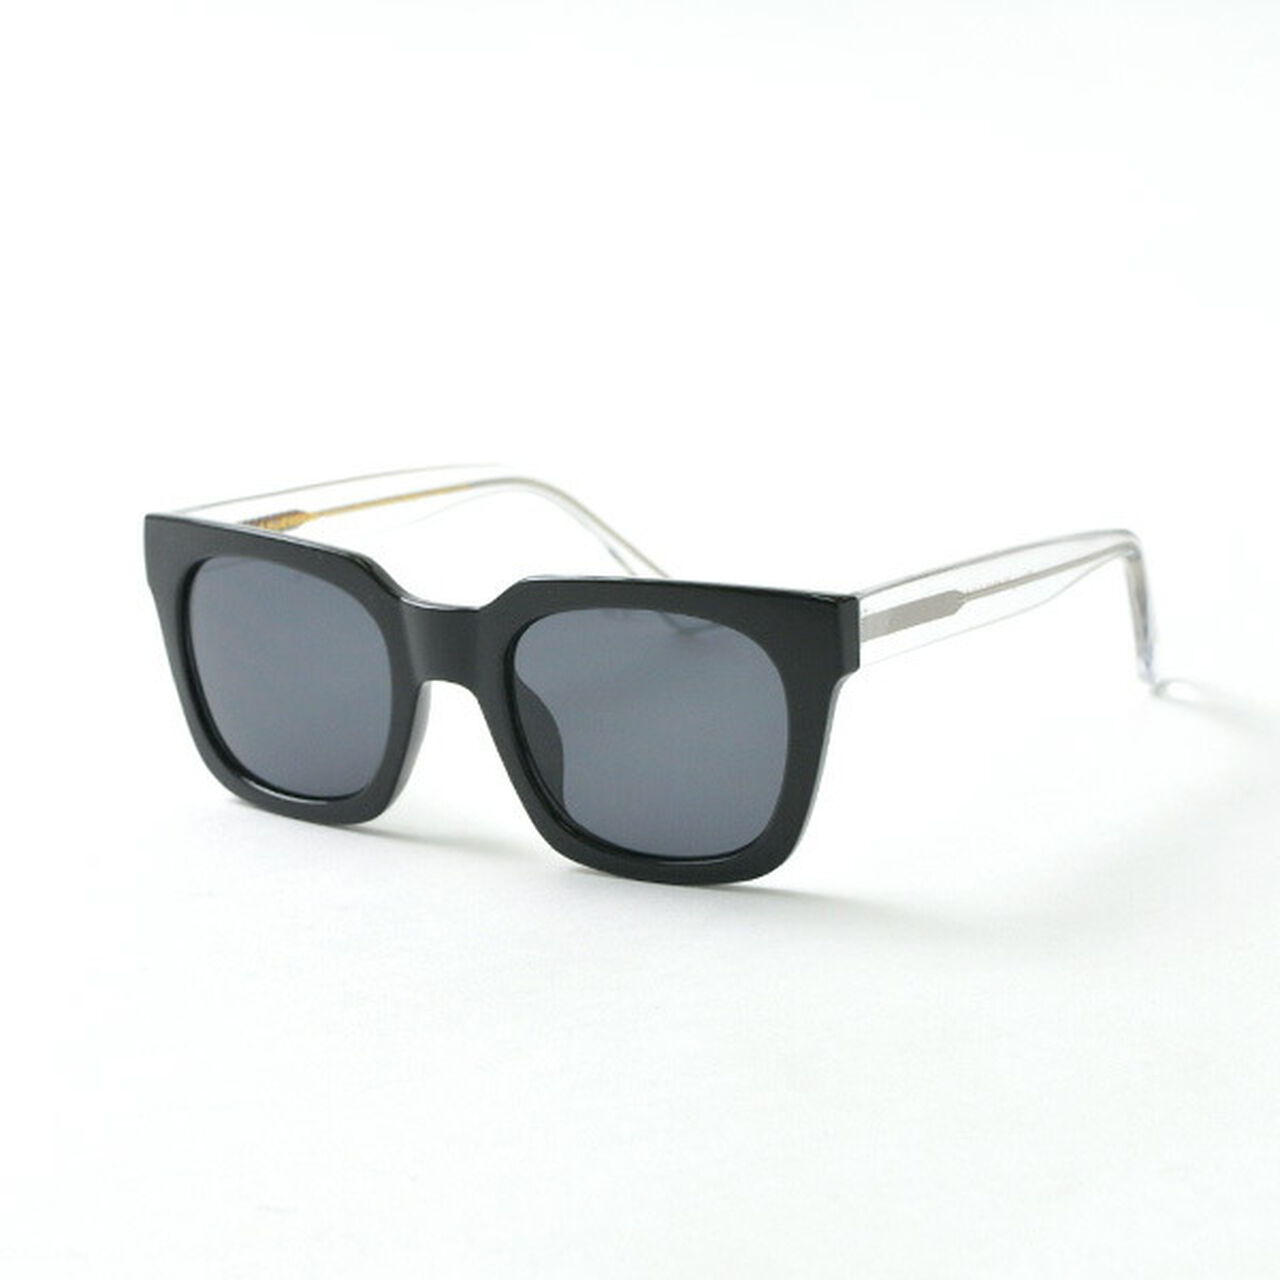 NANCY wide frame sunglasses,Black, large image number 0